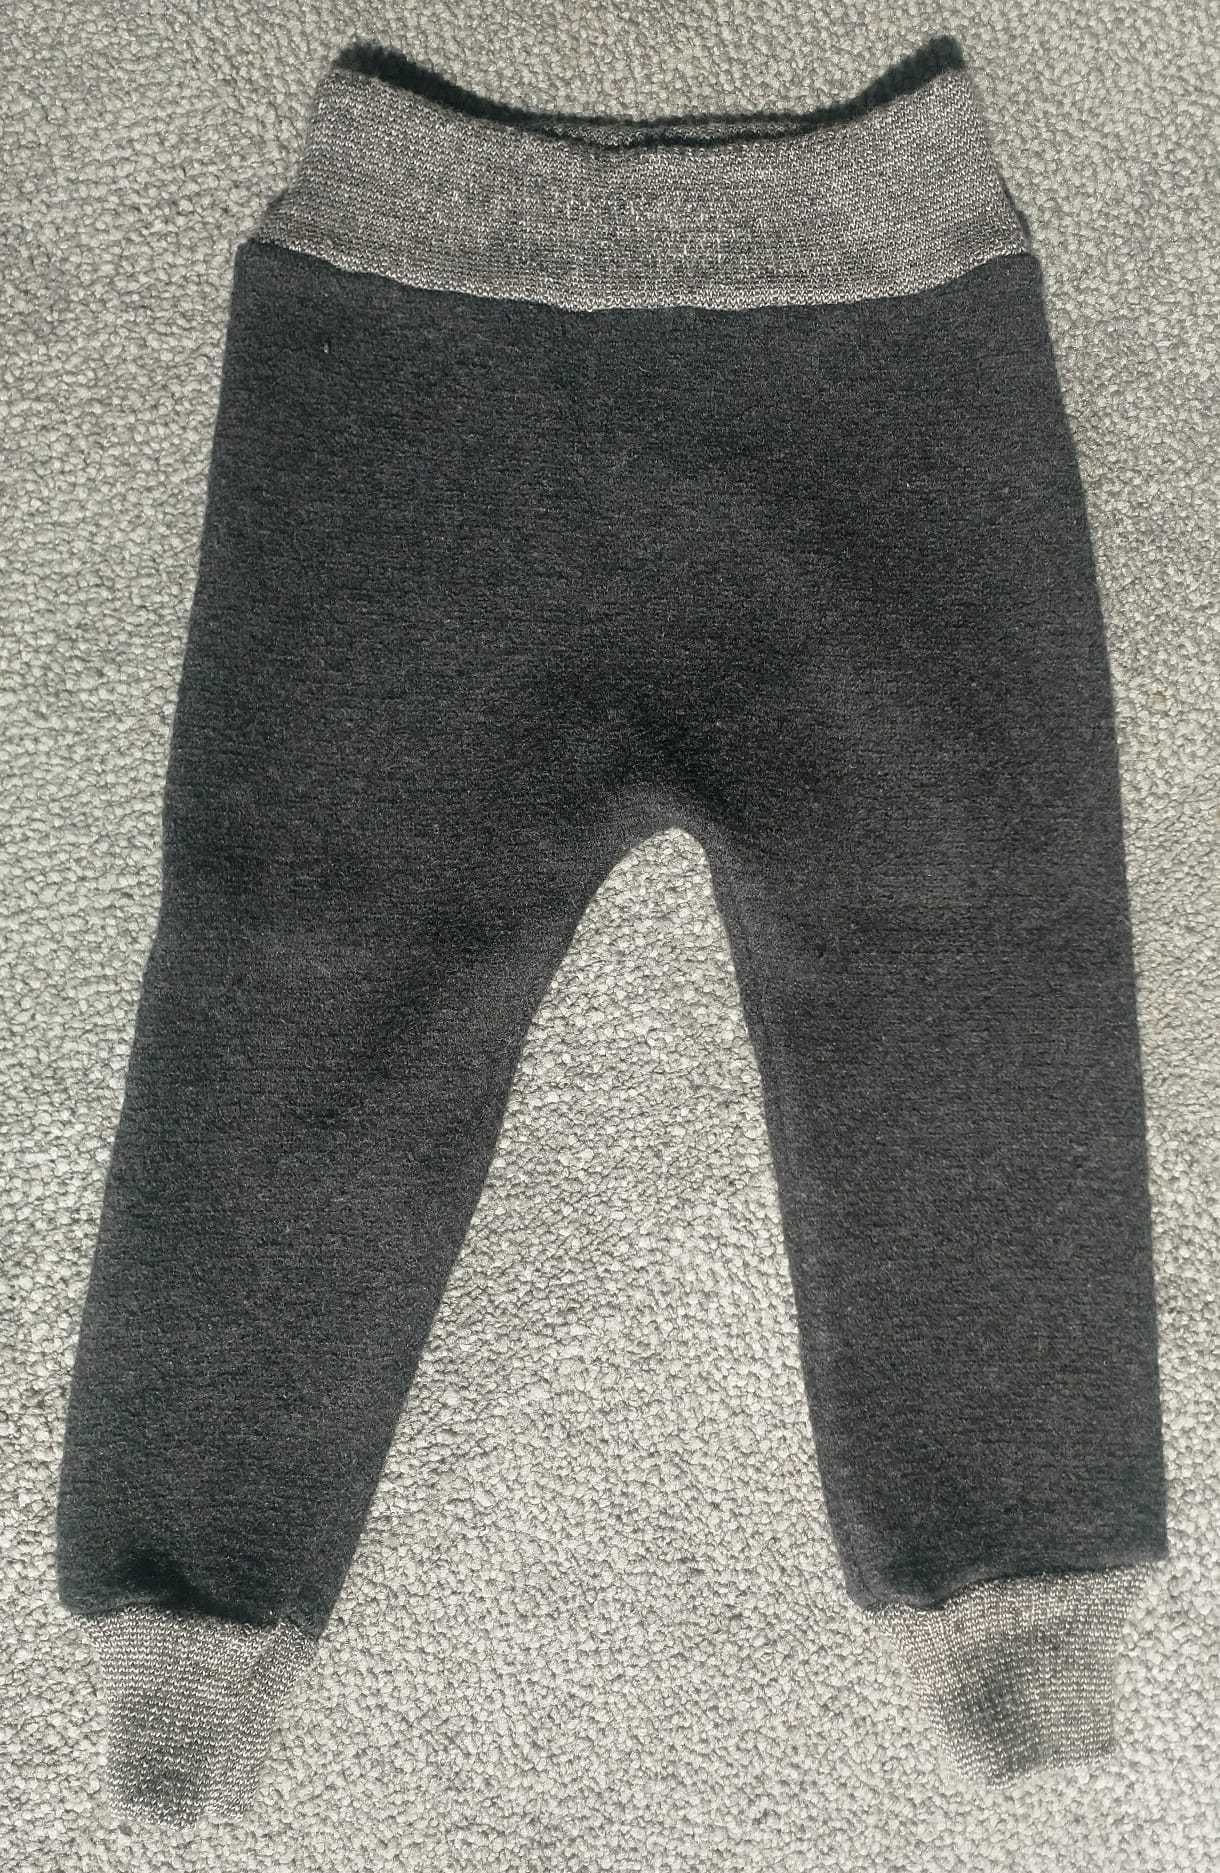 Pantaloni lana fiarta bloomers Disana, masura 86/920 (12-24M)